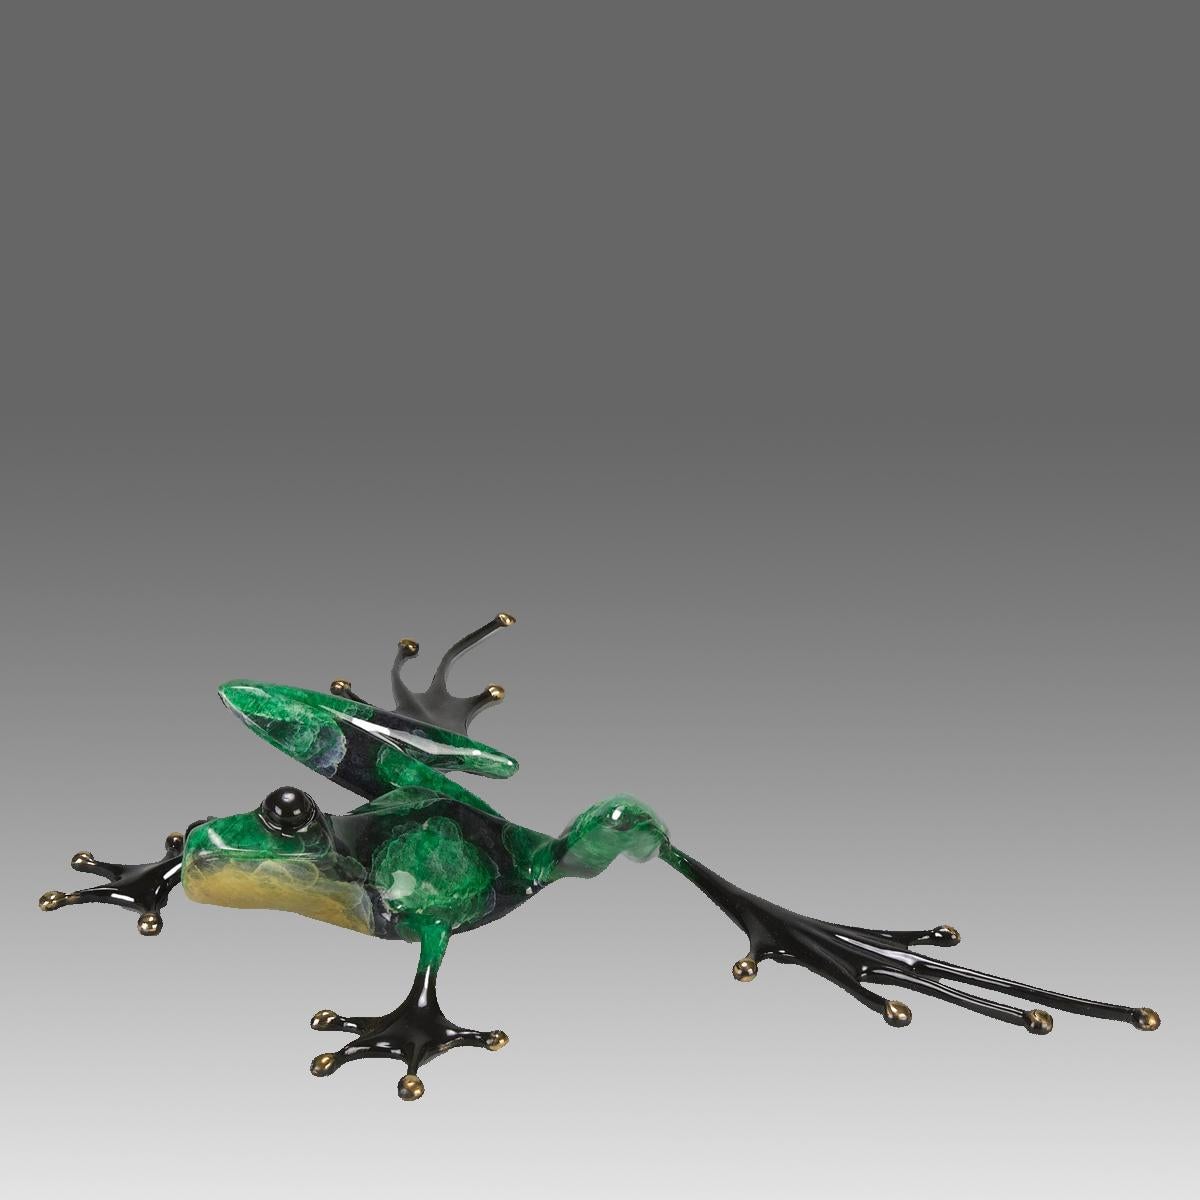 Une belle étude en bronze en édition limitée représentant une grenouille verte en position étirée, la tête relevée, présentant de très belles couleurs émaillées et une excellente surface tactile, signée Tim, numérotée 817/5000 et